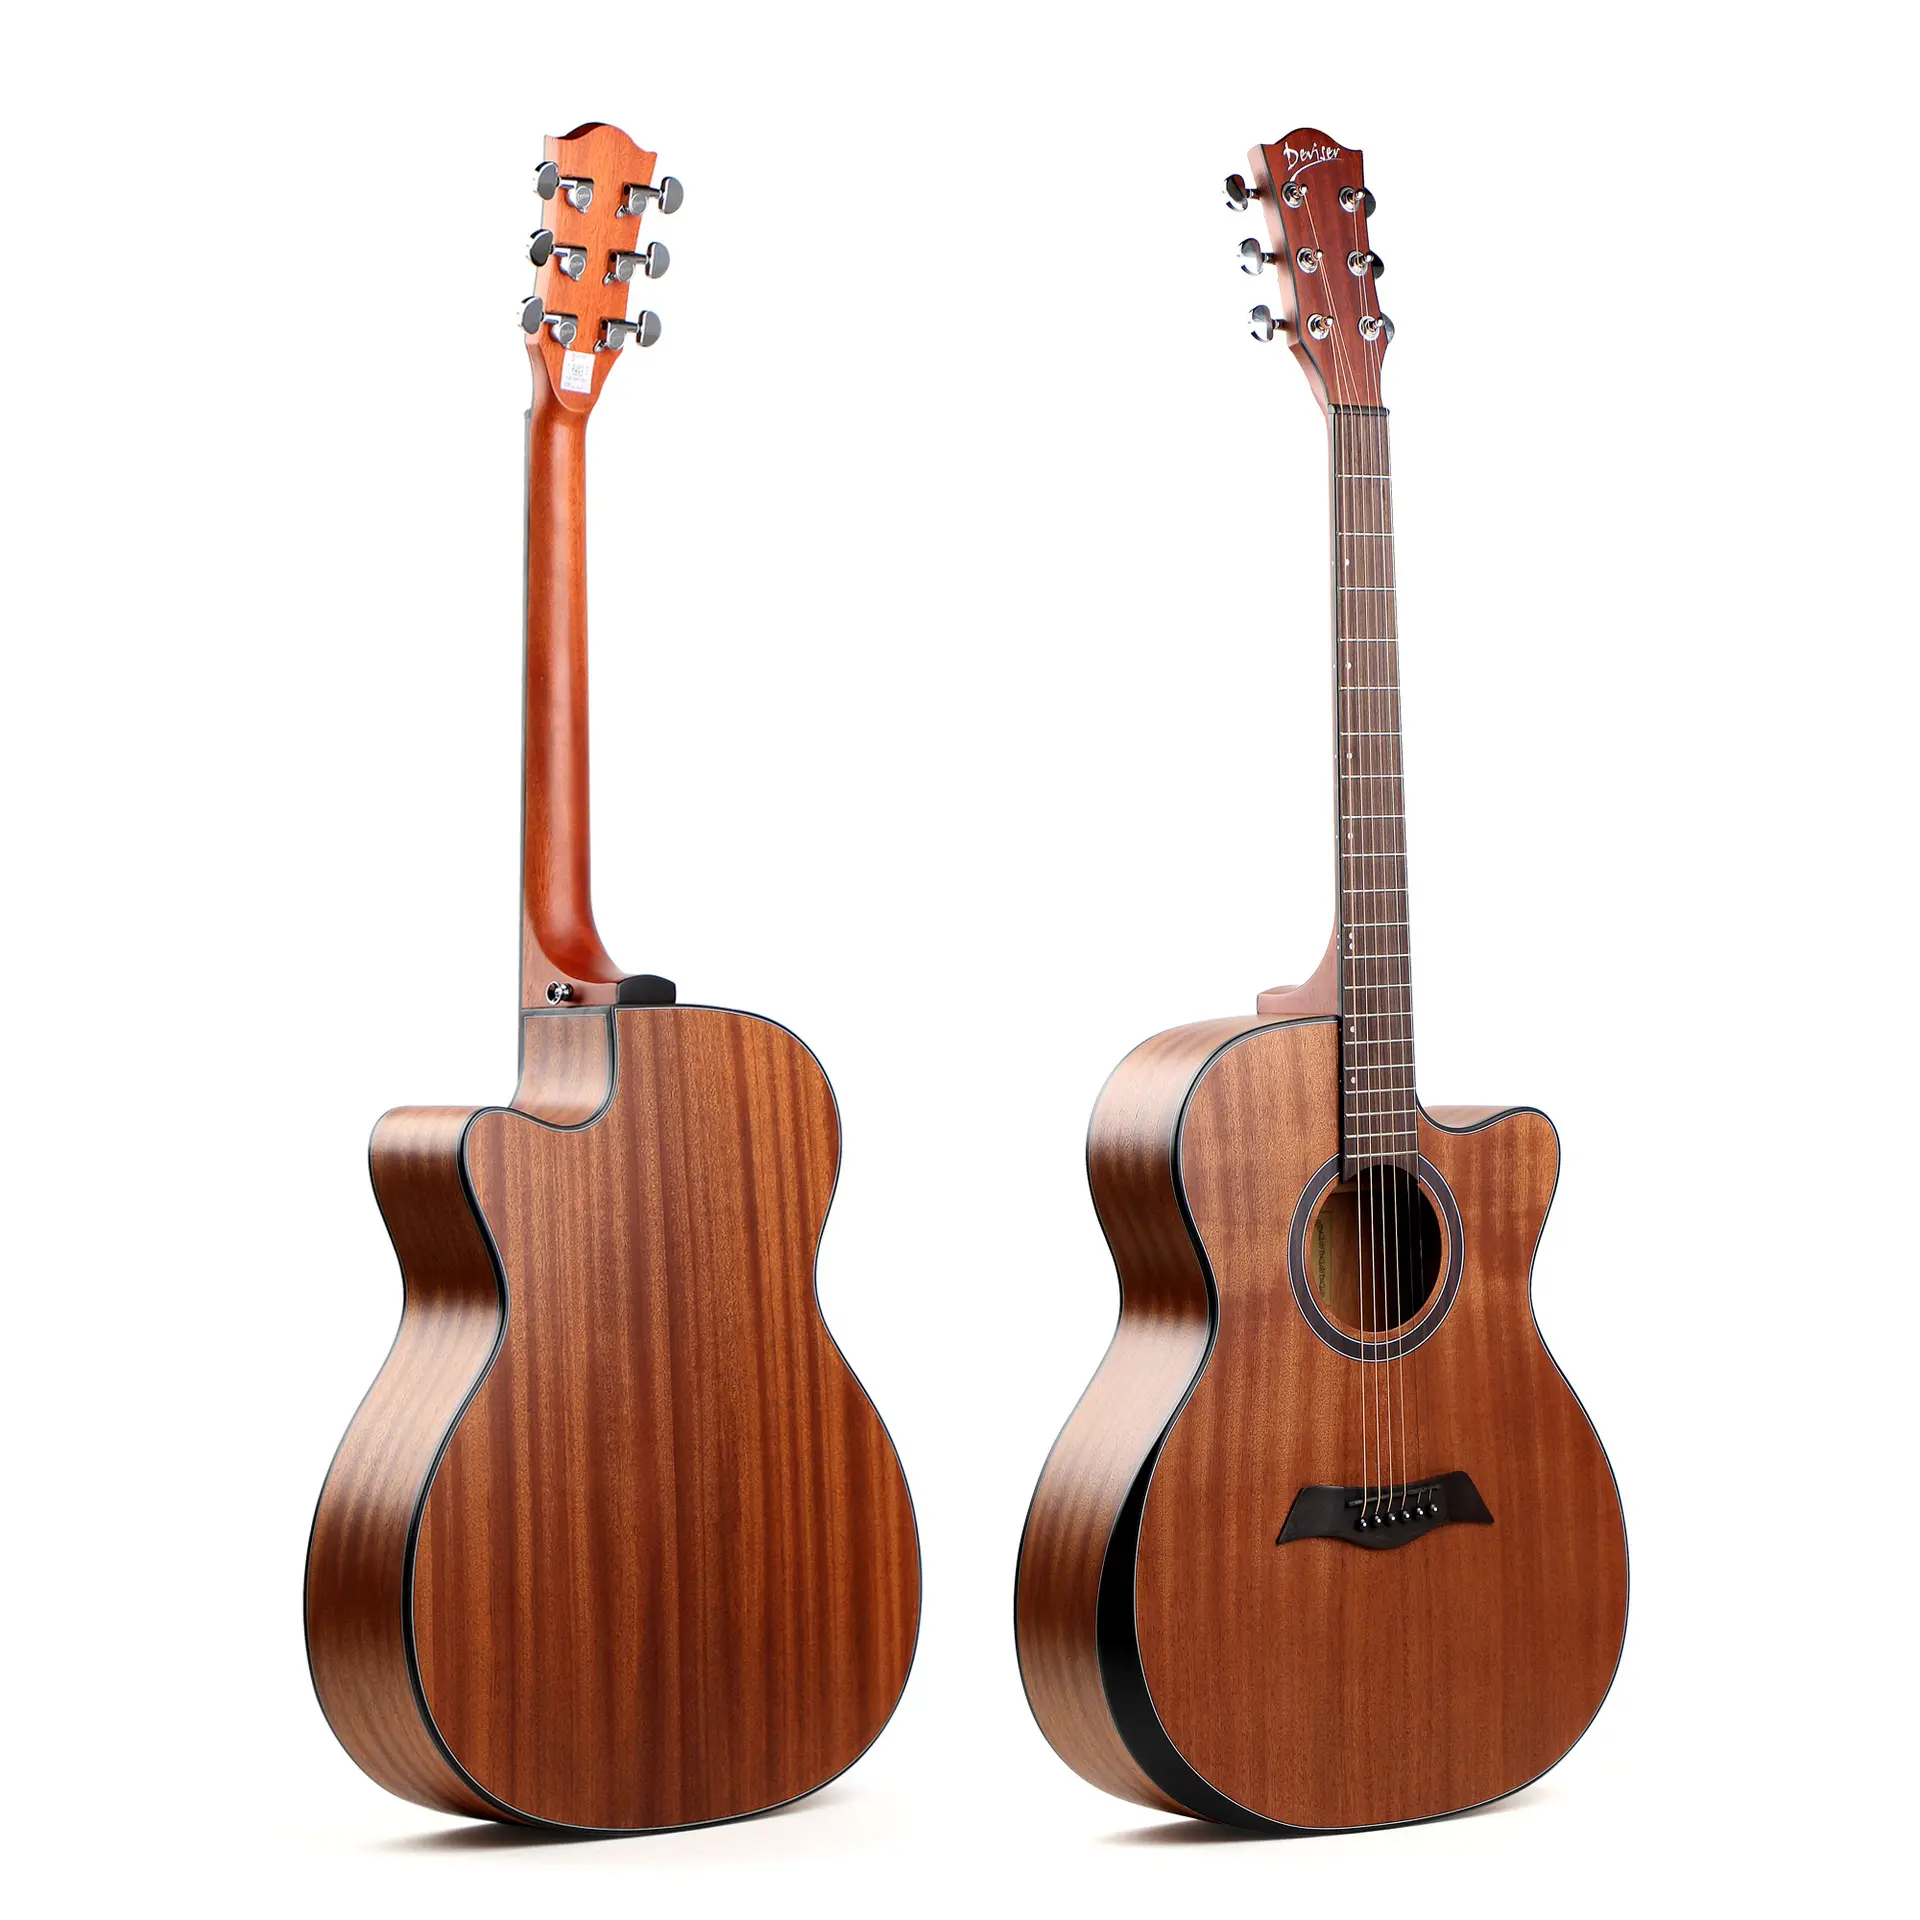 Direta de fábrica, 40 polegadas folk violão pode b violão acústico completo sapele plywood pode ser instalado com boxe elétrico